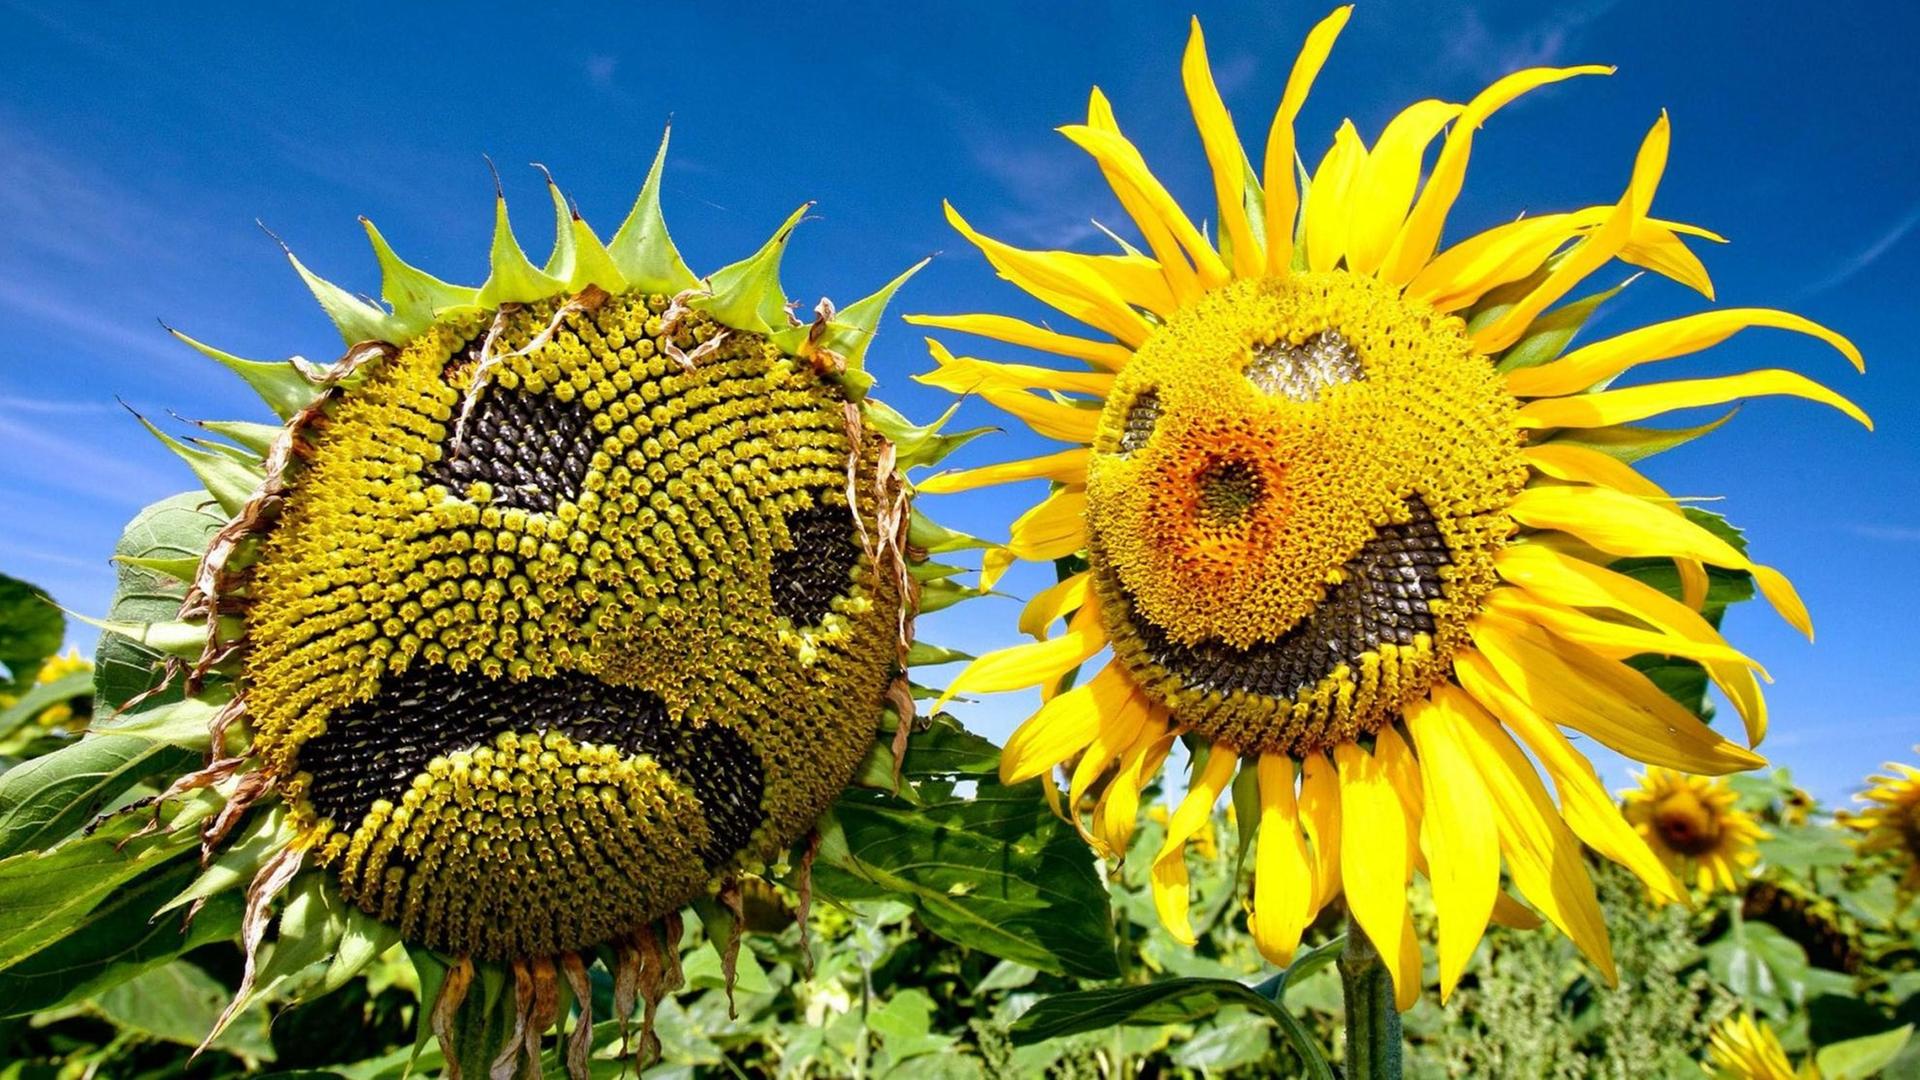 Durch ihre sonnenähnliche Blütenform sind Sonnenblumen als Dekoration sehr beliebt